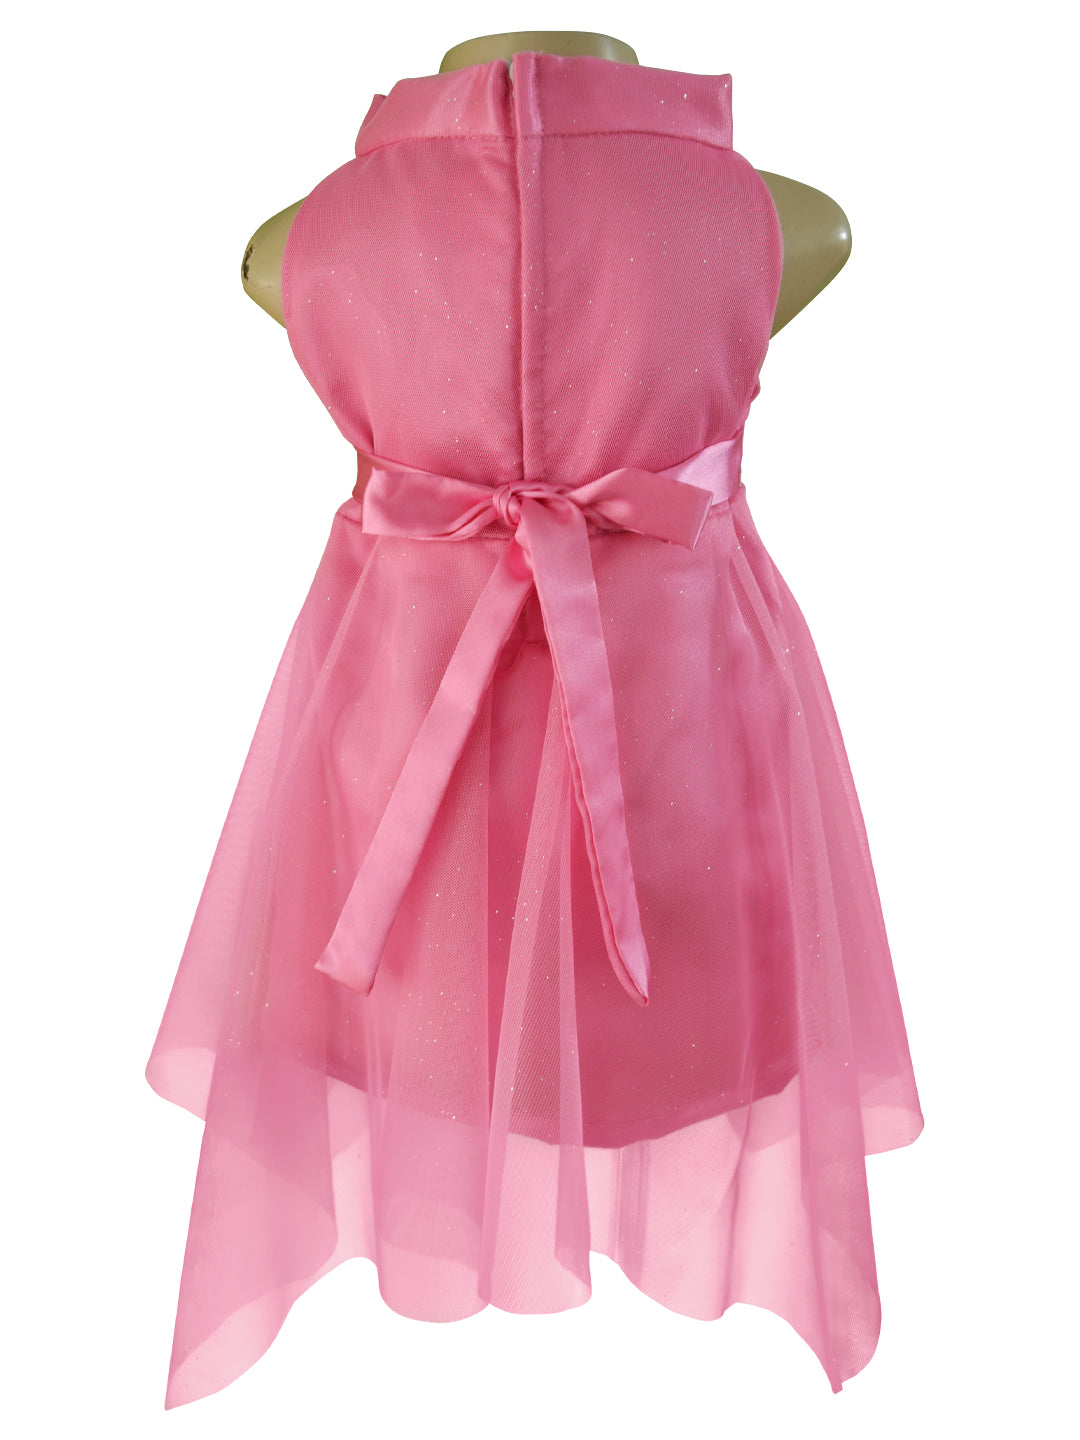 Candy Pink High Neck Dress